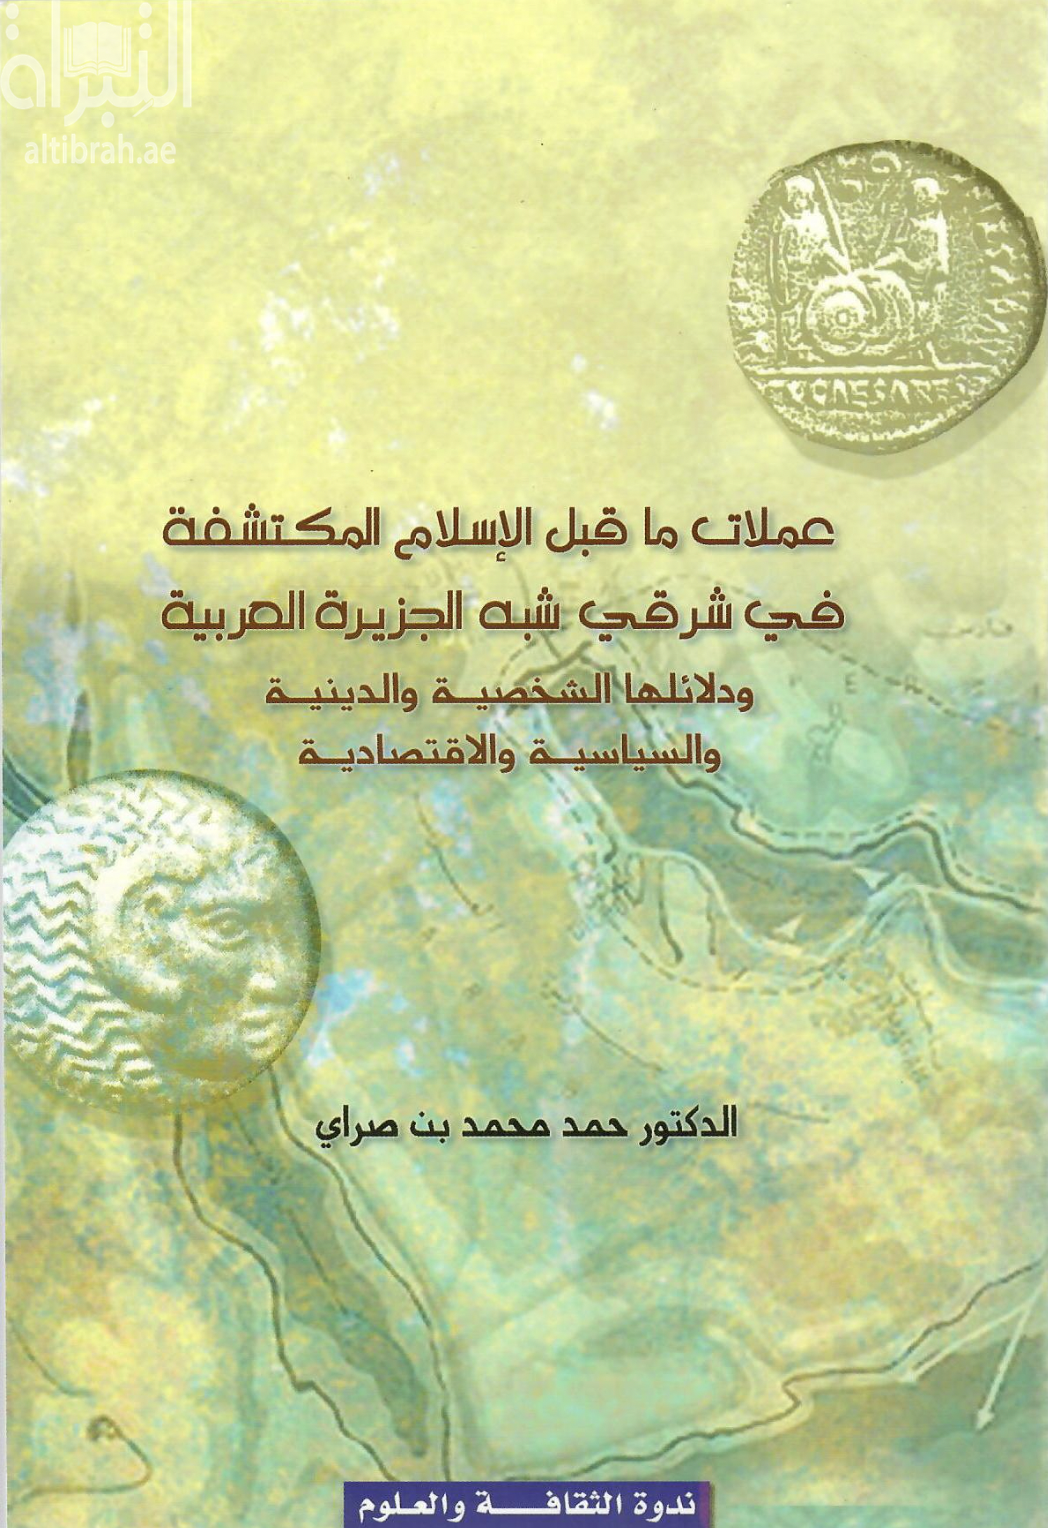 عملات ما قبل الإسلام المكتشفة في شرقي شبه الجزيرة العربية ودلائلها الشخصية والدينية والسياسية والإقتصادية